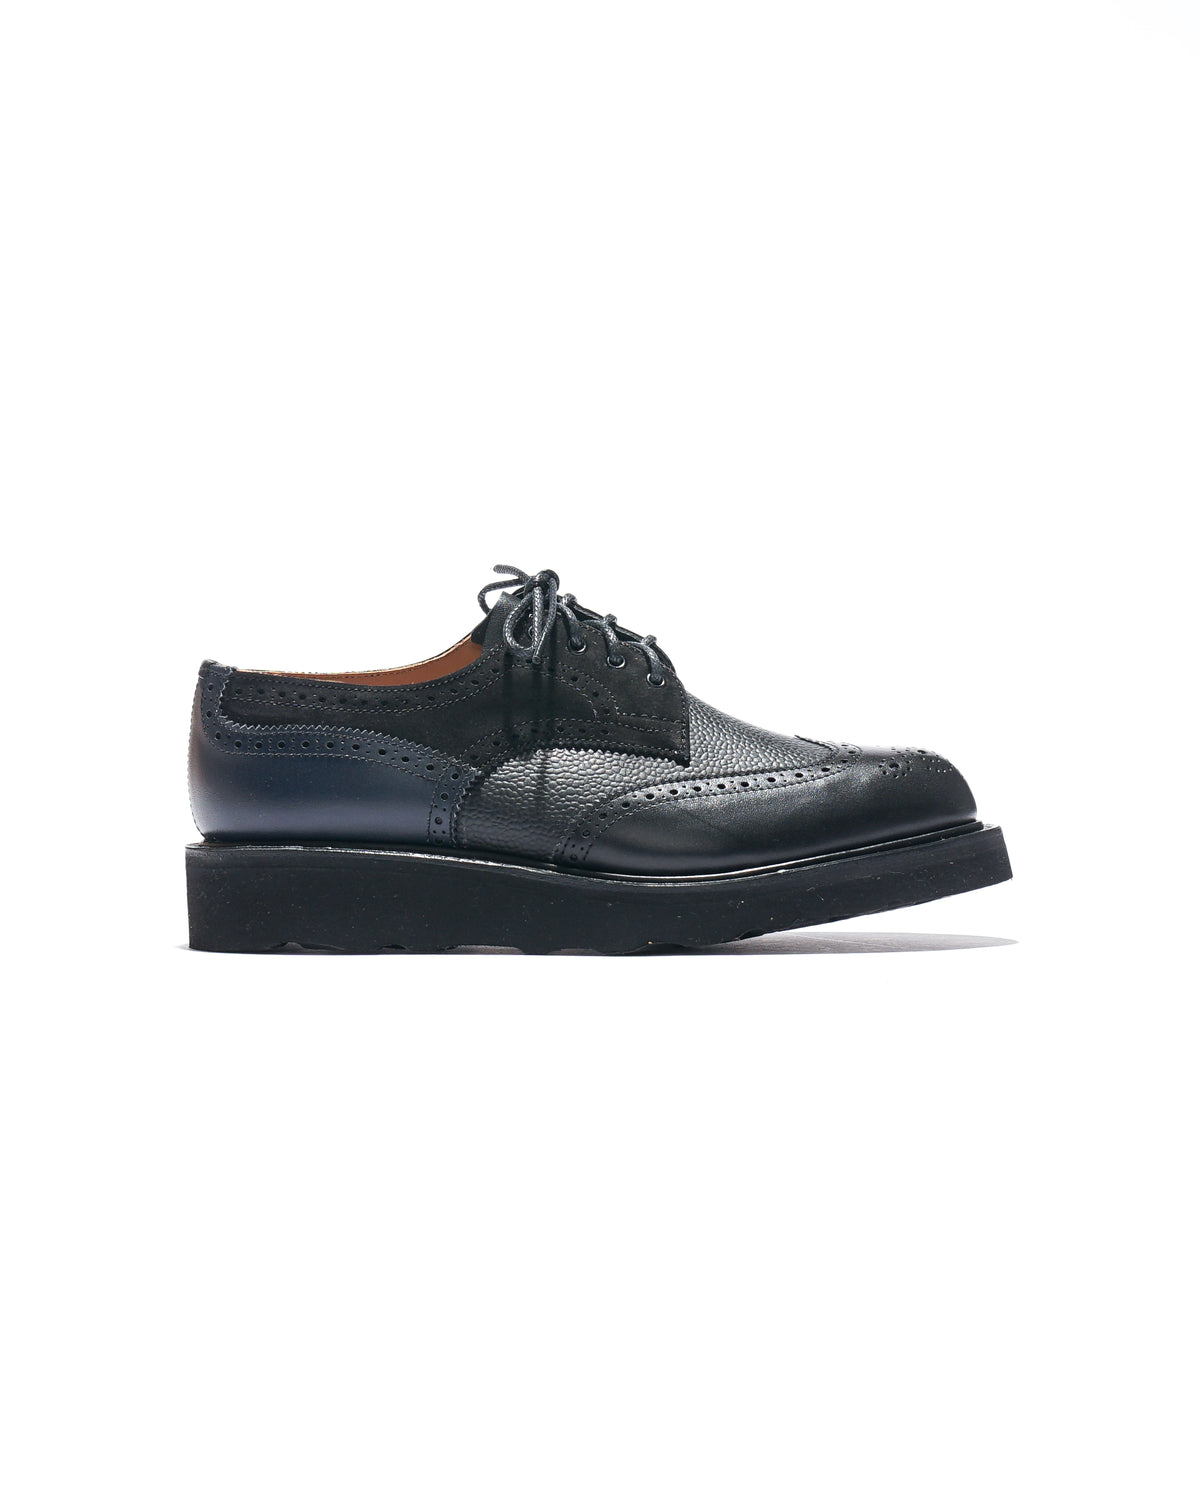 Administratrix - Black, Flexible brogue shoe